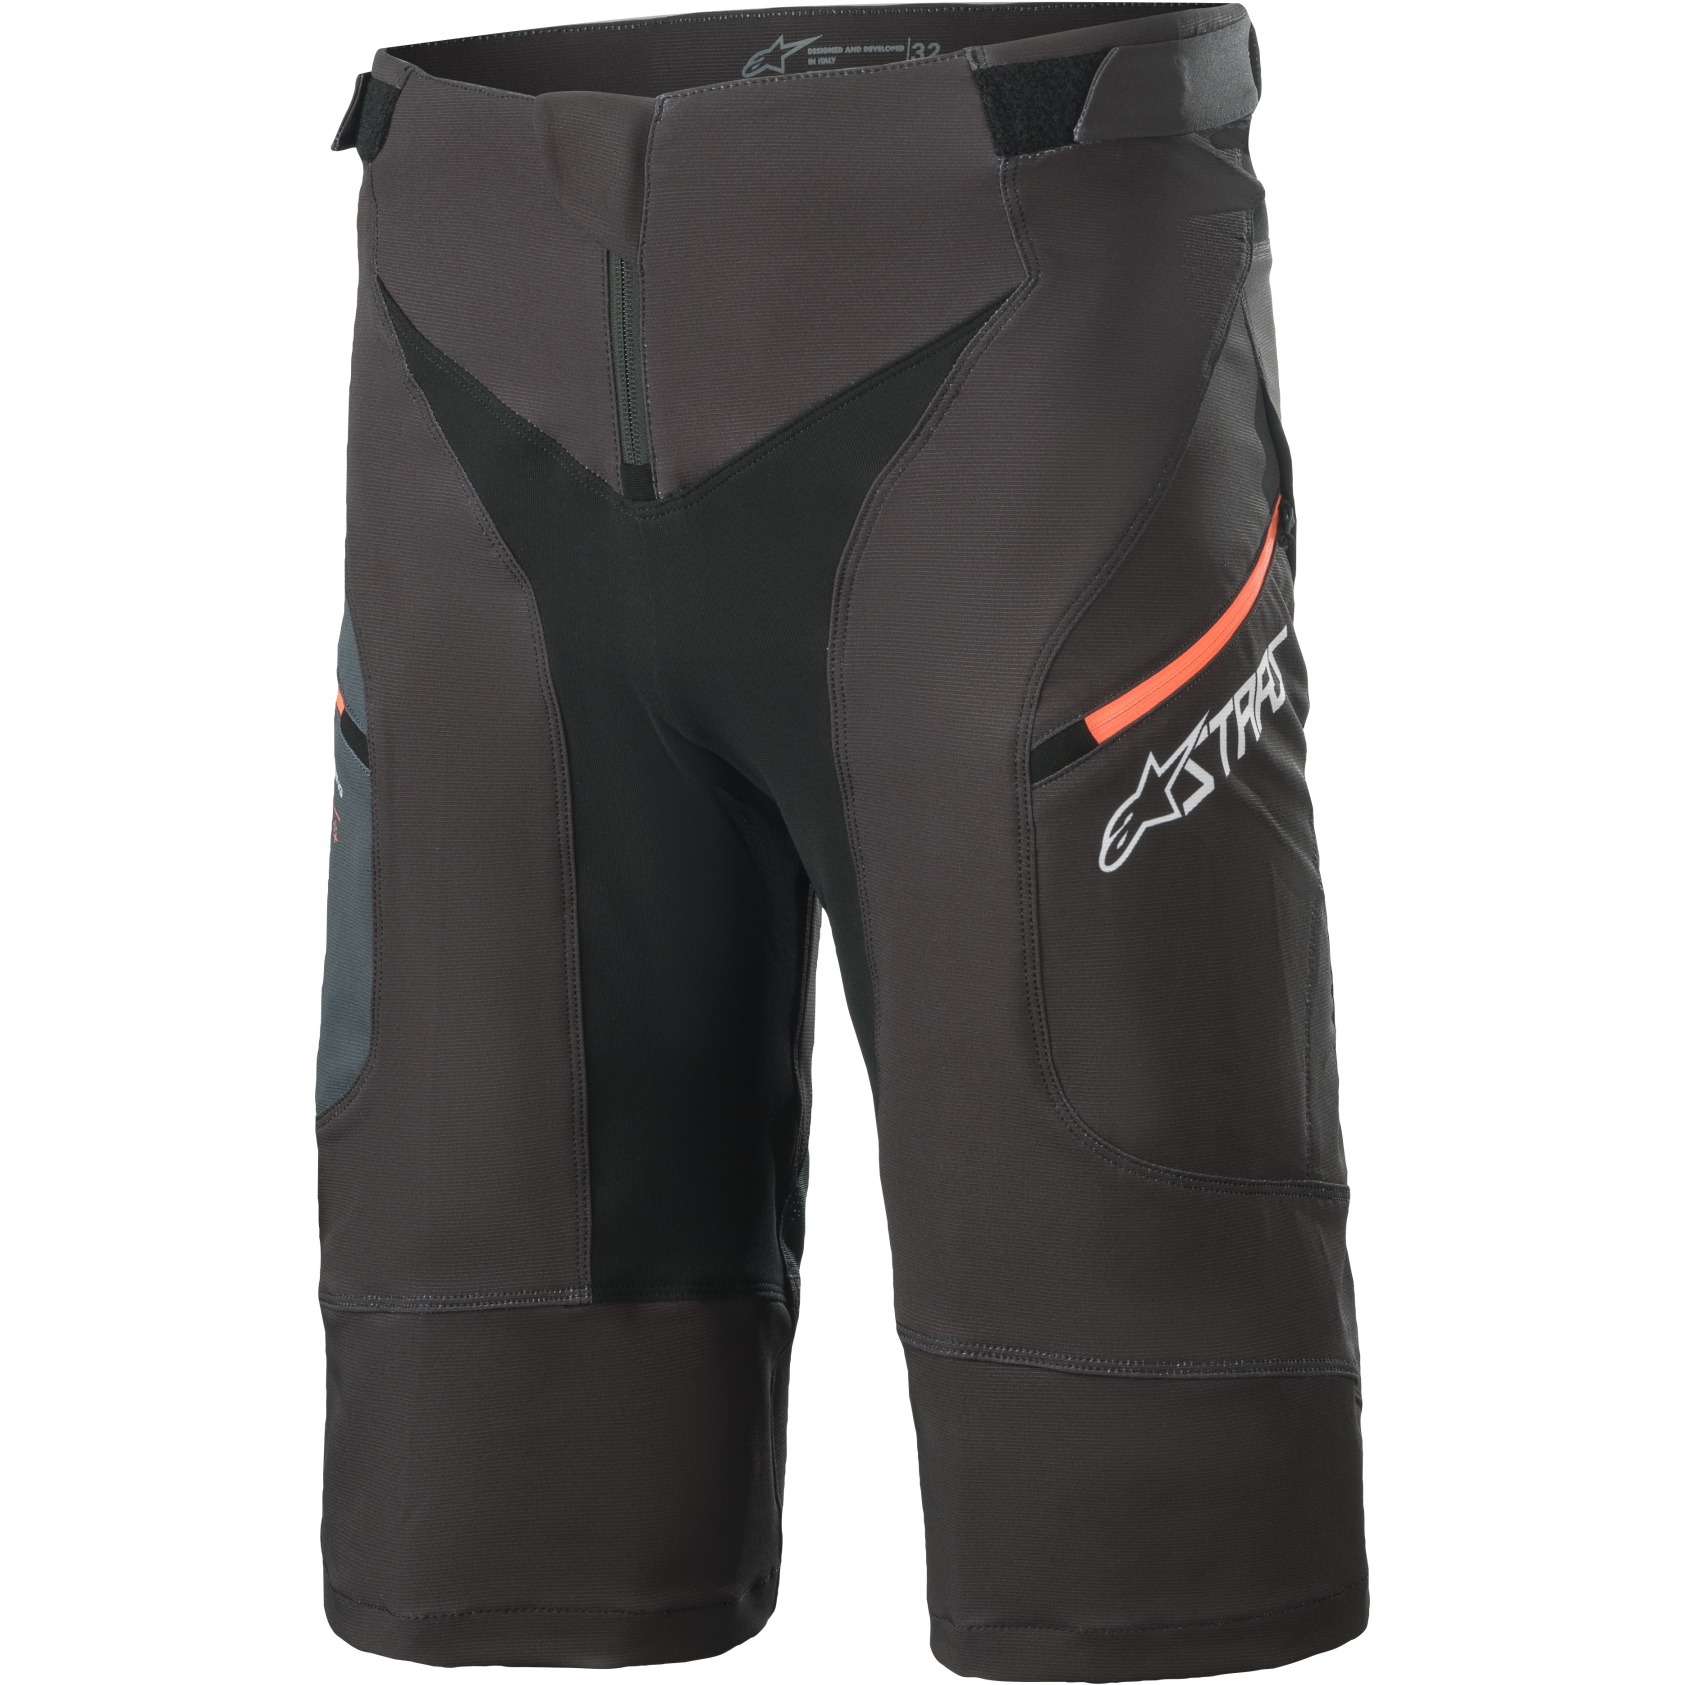 Produktbild von Alpinestars Drop 8.0 Shorts - black/coral